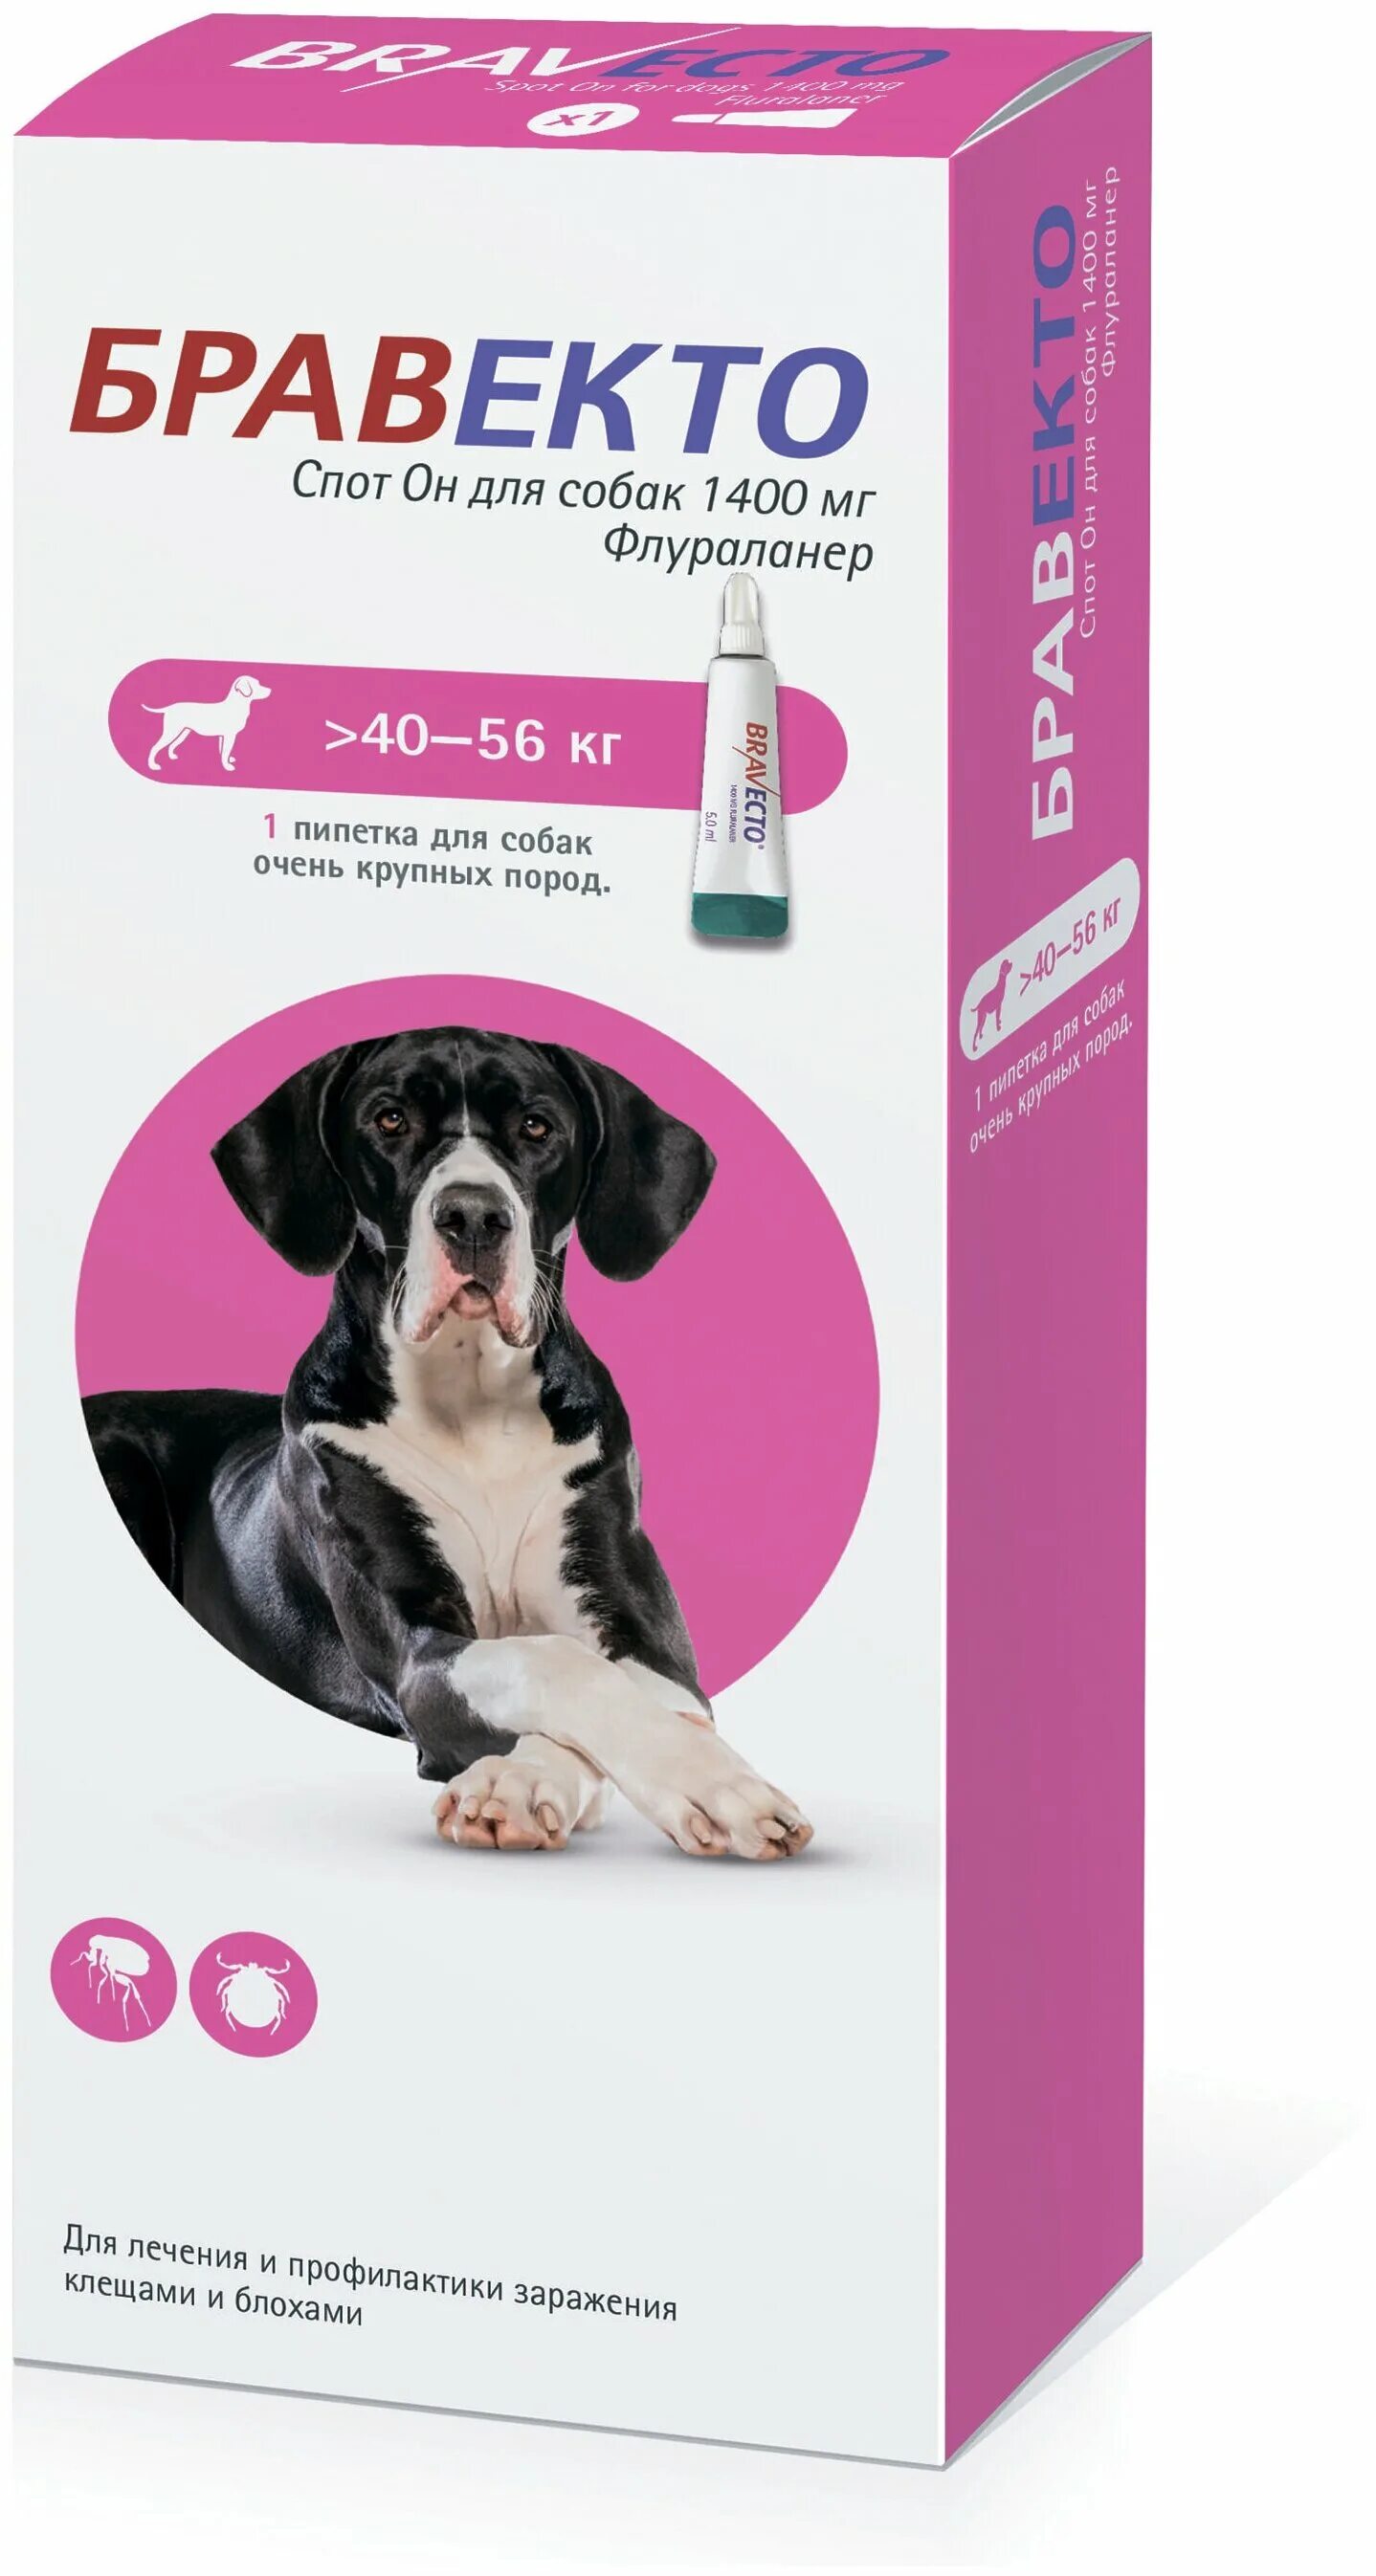 Бравекто для собак купить в калининграде. Бравекто спот он для собак (1400 мг) 40-56 кг. Бравекто (MSD animal Health) капли от блох и клещей спот он для собак 4,5-10 кг. Бравекто для собак 10-20 капли. Бравекто для собак 1400 мг 40-56.